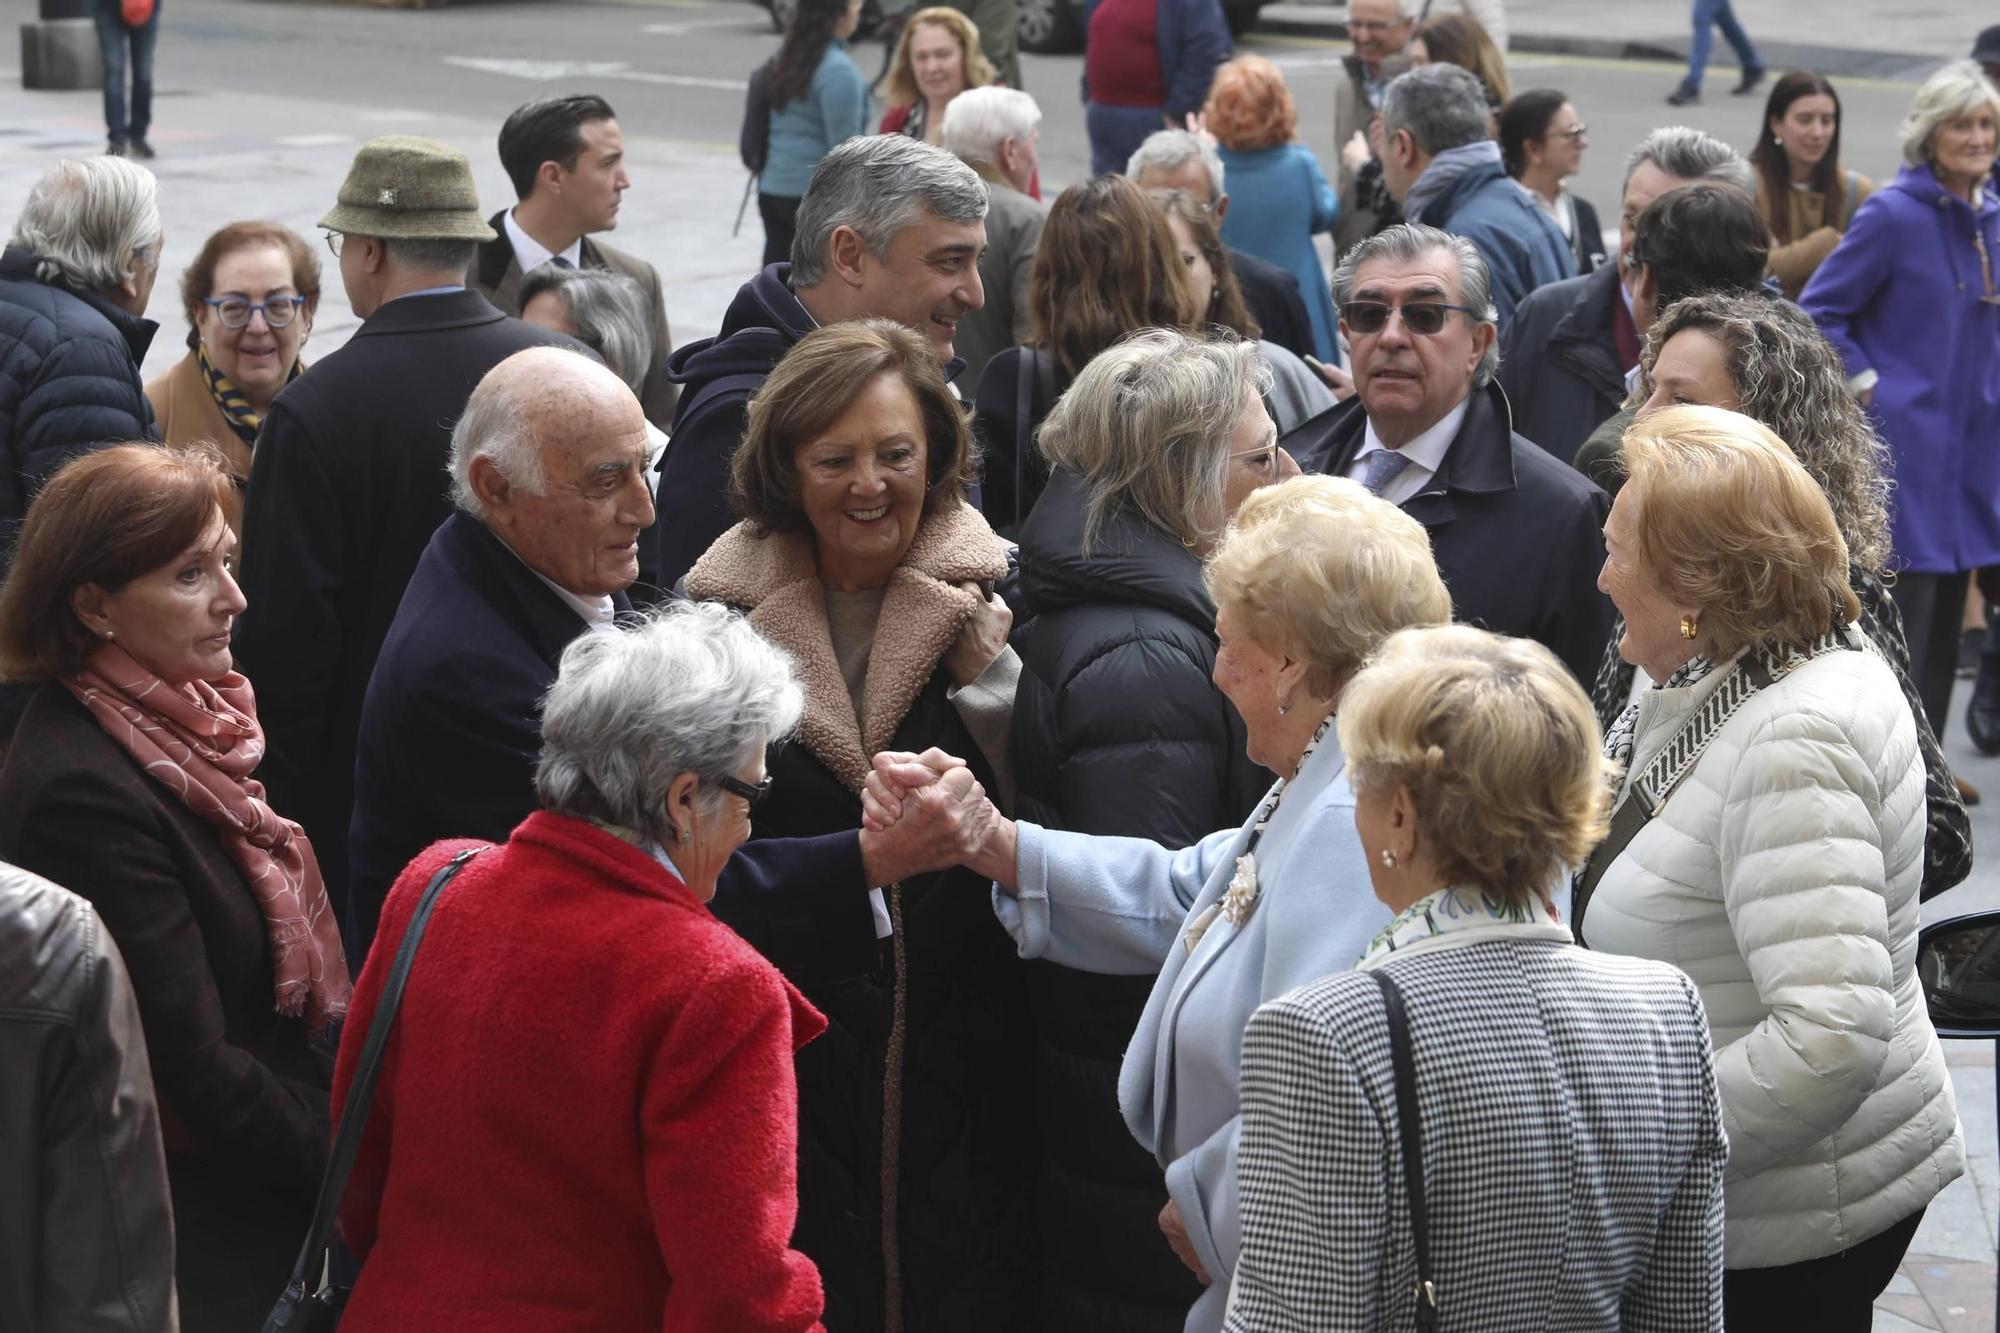 Emotivo adiós en Oviedo a Fernández-Rañada, "una persona entrañable y un trabajador minucioso"